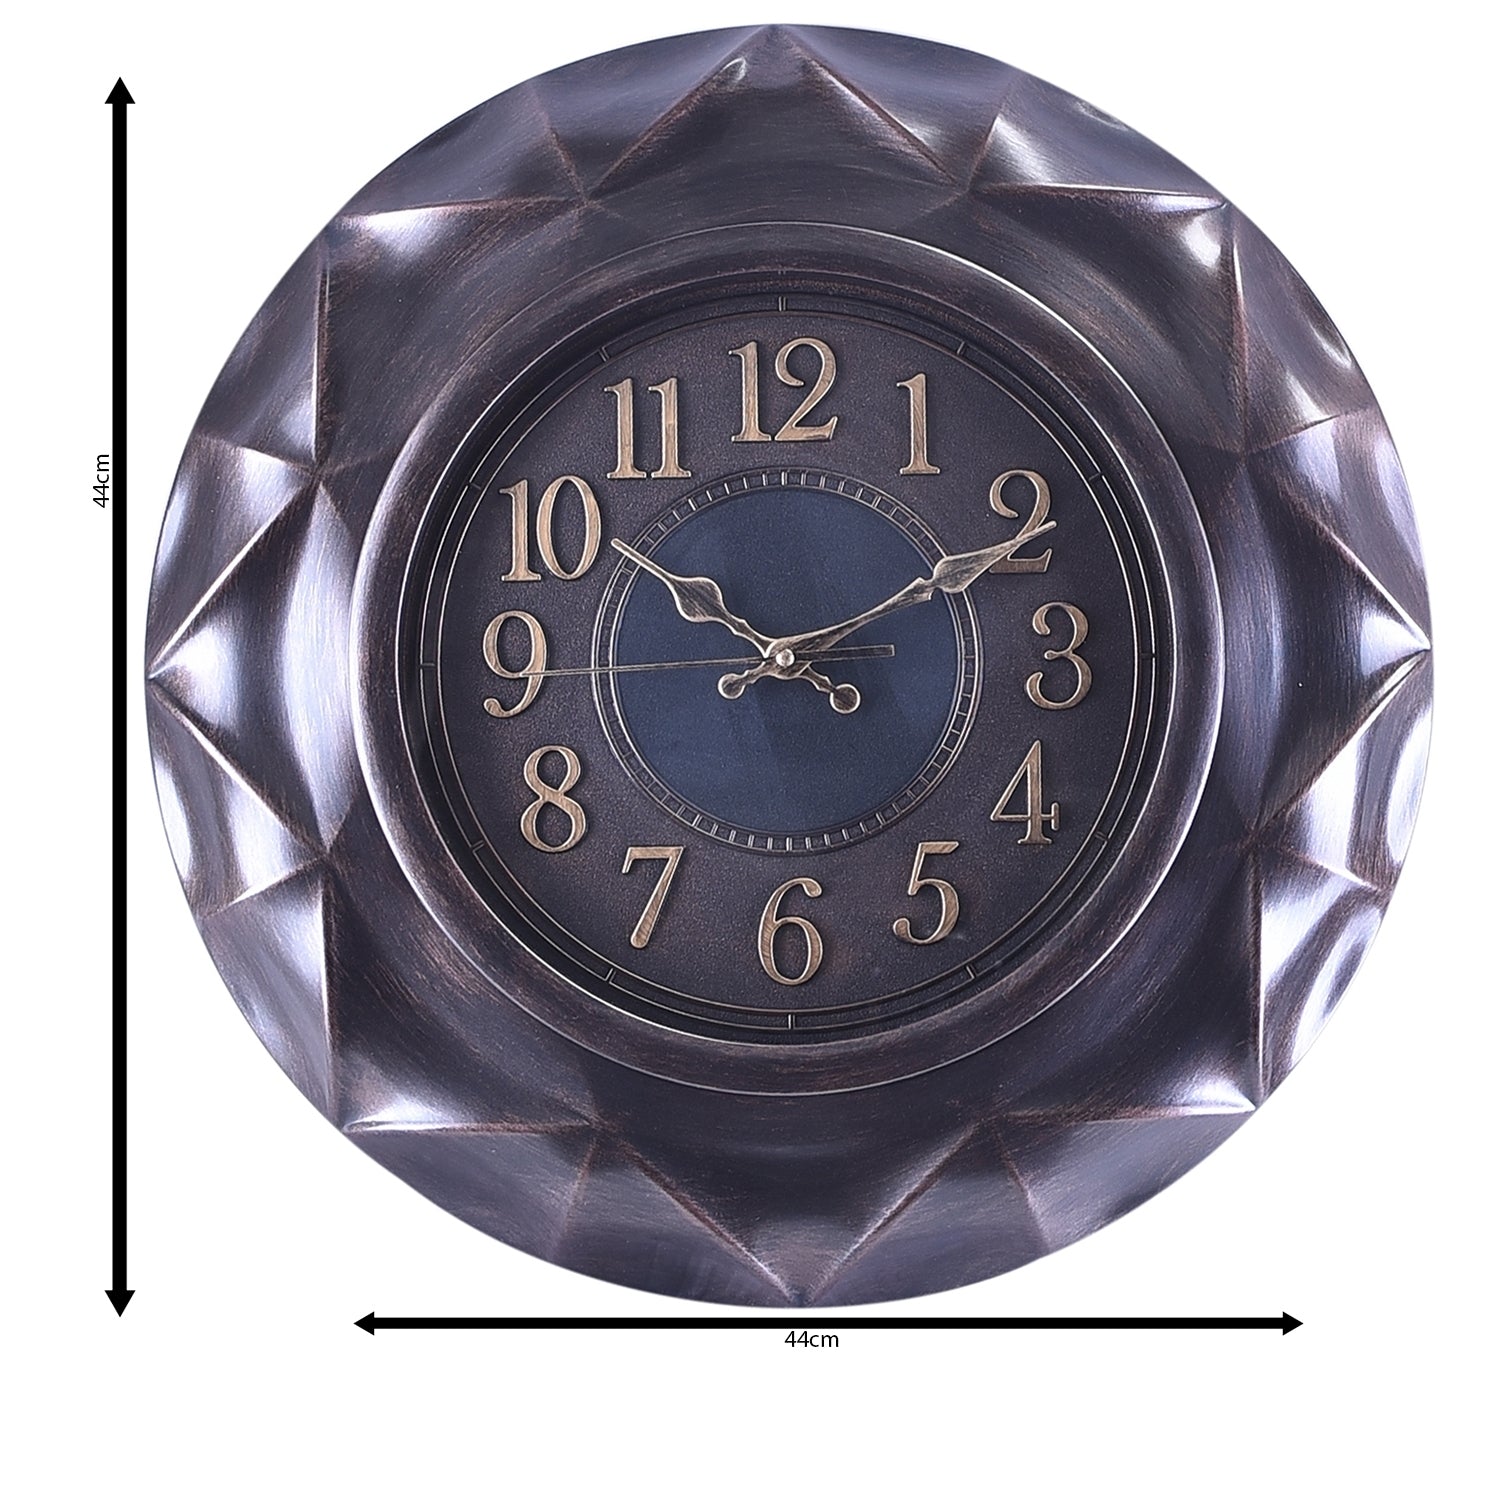 Premium Antique Design Analog Wall Clock 21